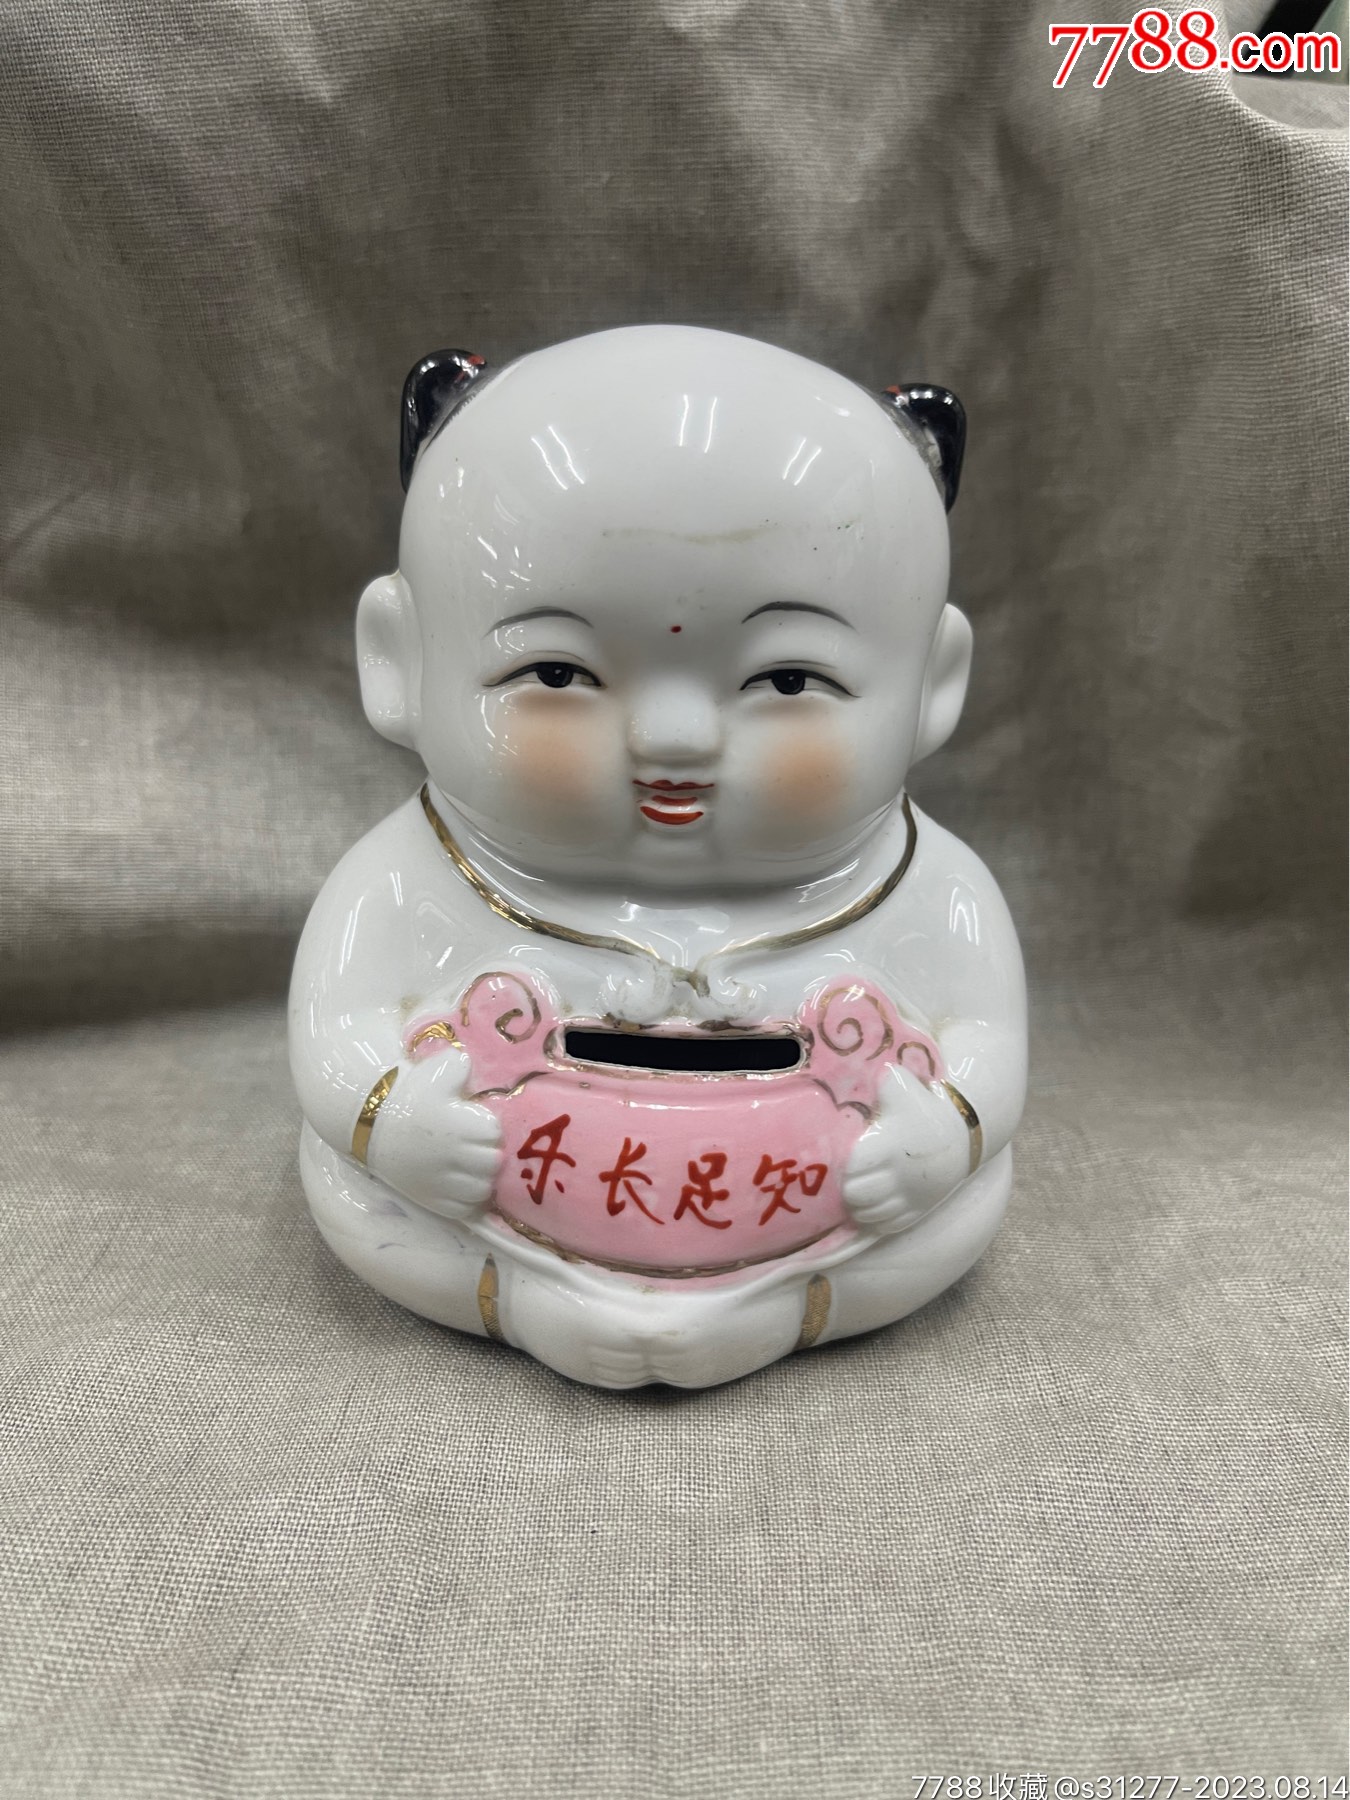 大瓷娃娃一个-价格:160元-se93093421-雕塑瓷/瓷雕-零售-7788收藏__收藏热线